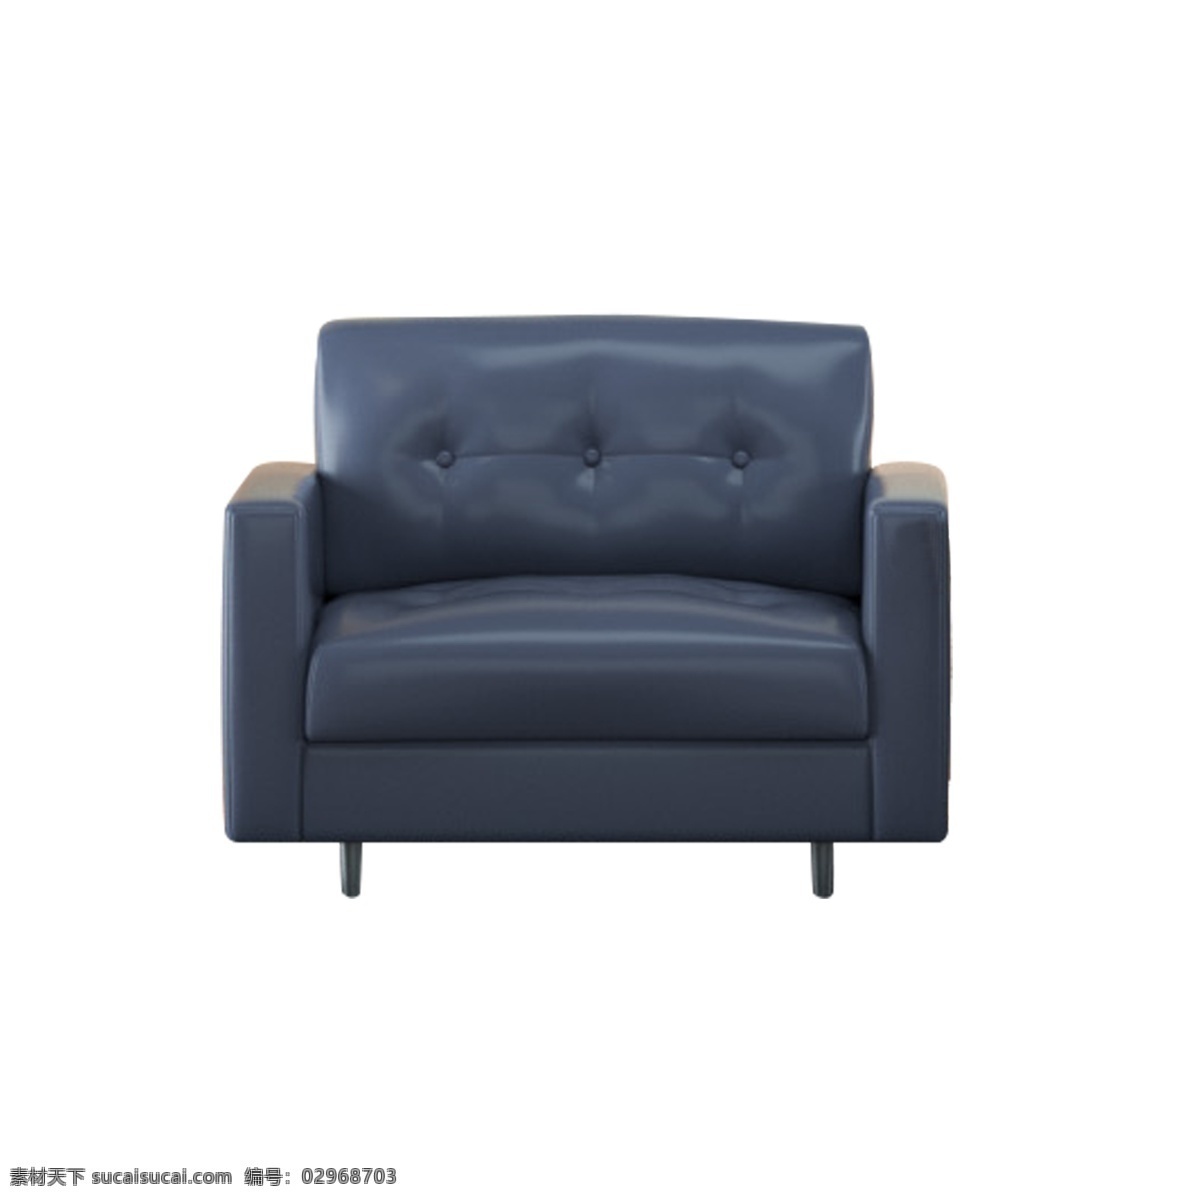 灰色 圆弧 沙发 元素 家居 光泽 质感 纹理 座椅 坐垫 真实 家居设计 简约 大气 弹簧